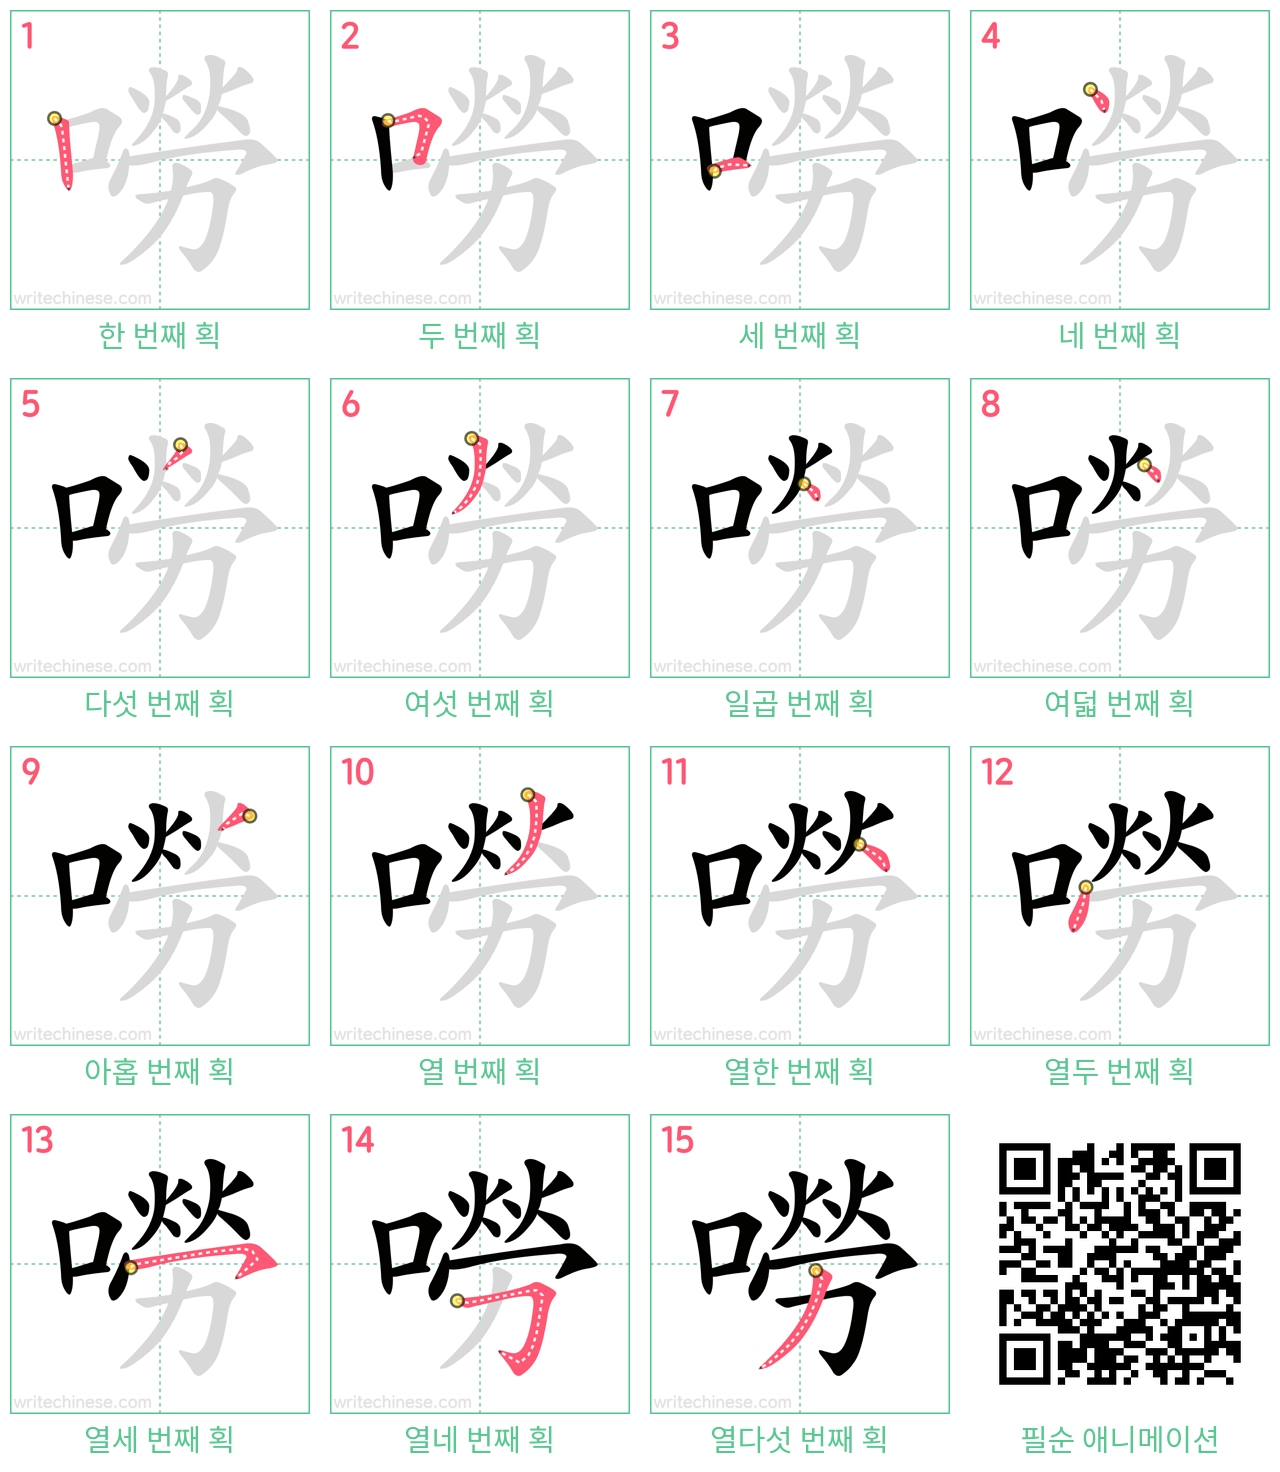 嘮 step-by-step stroke order diagrams